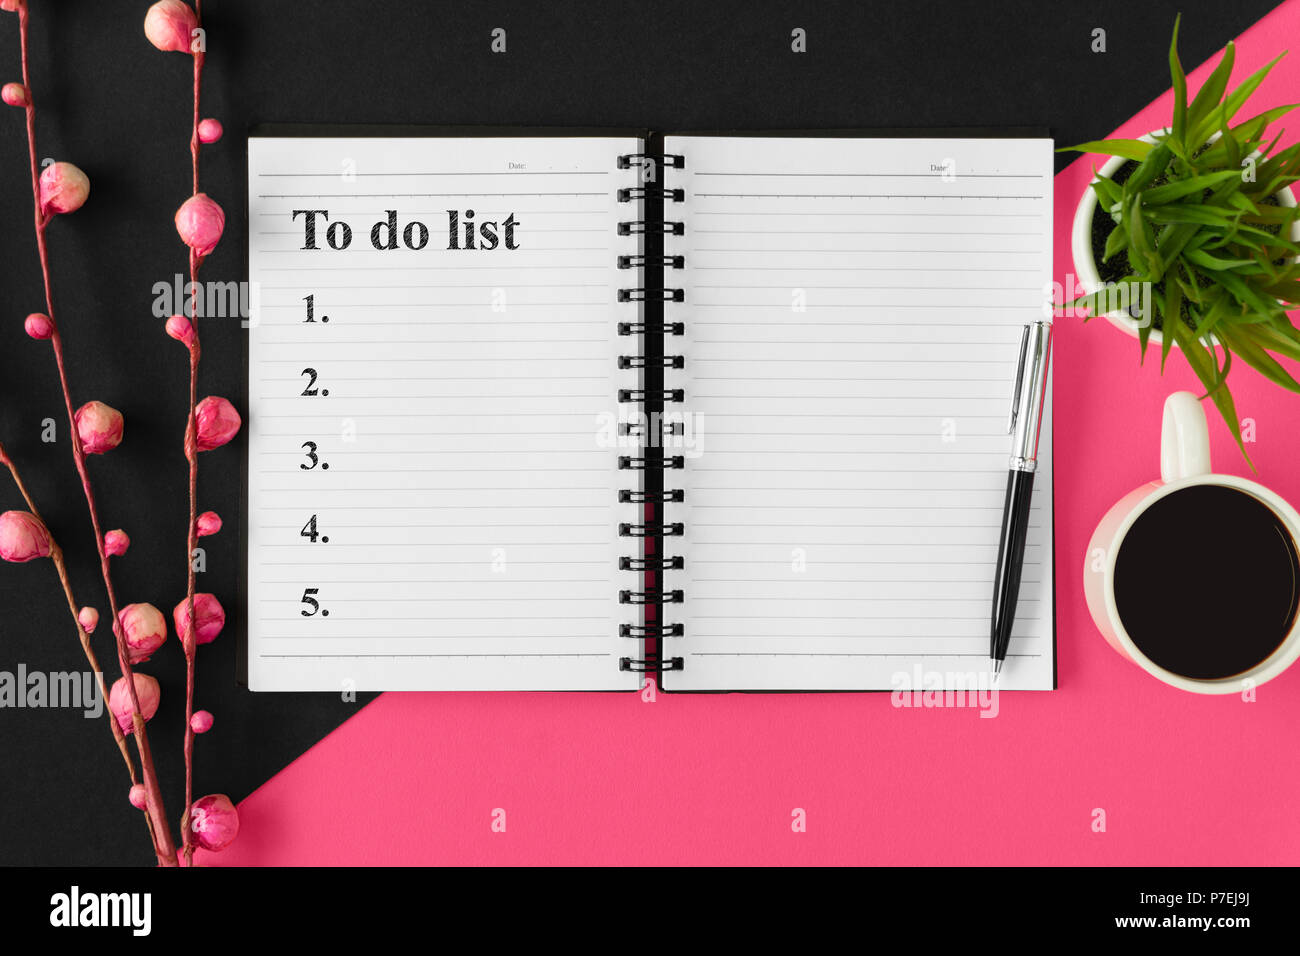 , Um Liste zu tun. Notebook und Kaffee auf rosa und schwarzen Hintergrund. Stockfoto